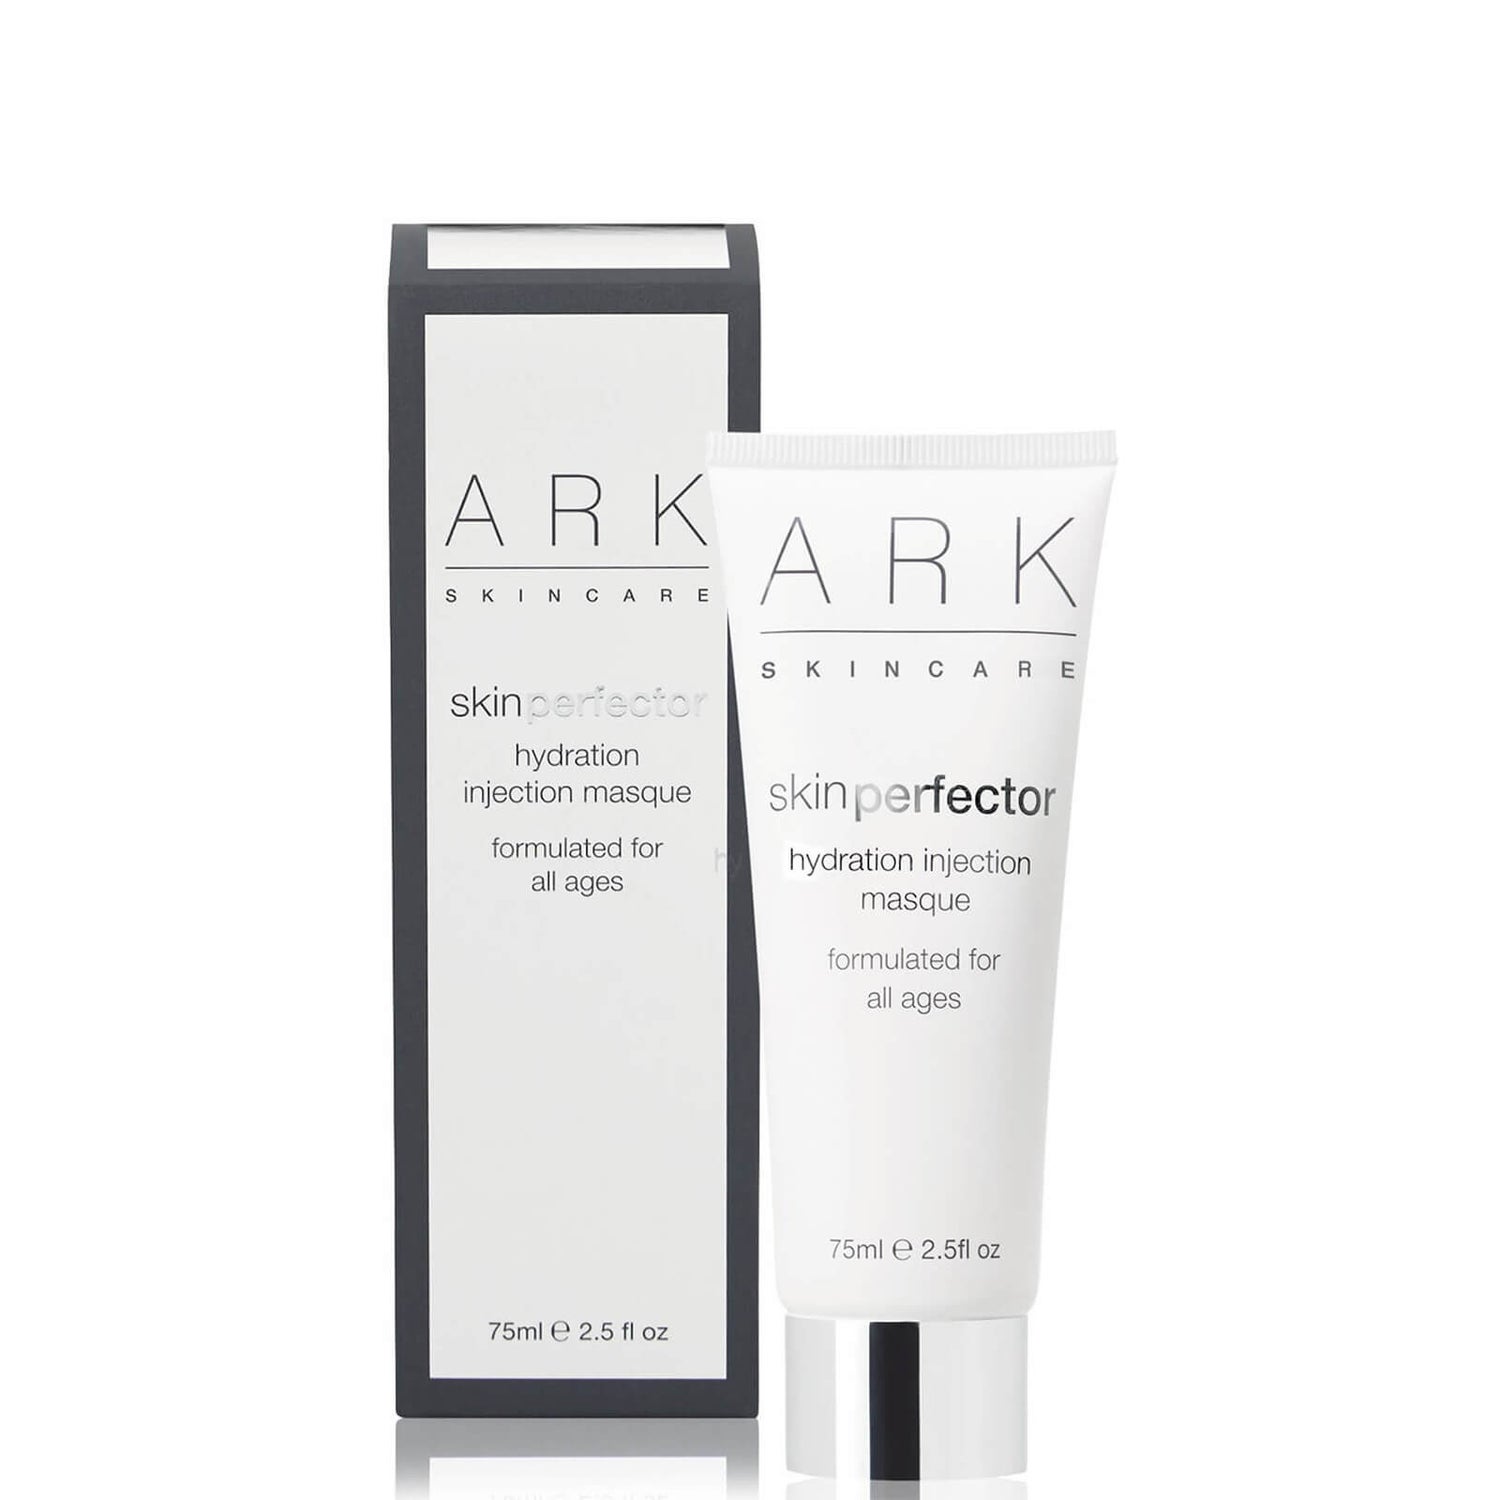 ARK Skincare ハイドレーション インジェクション マスク 30ml